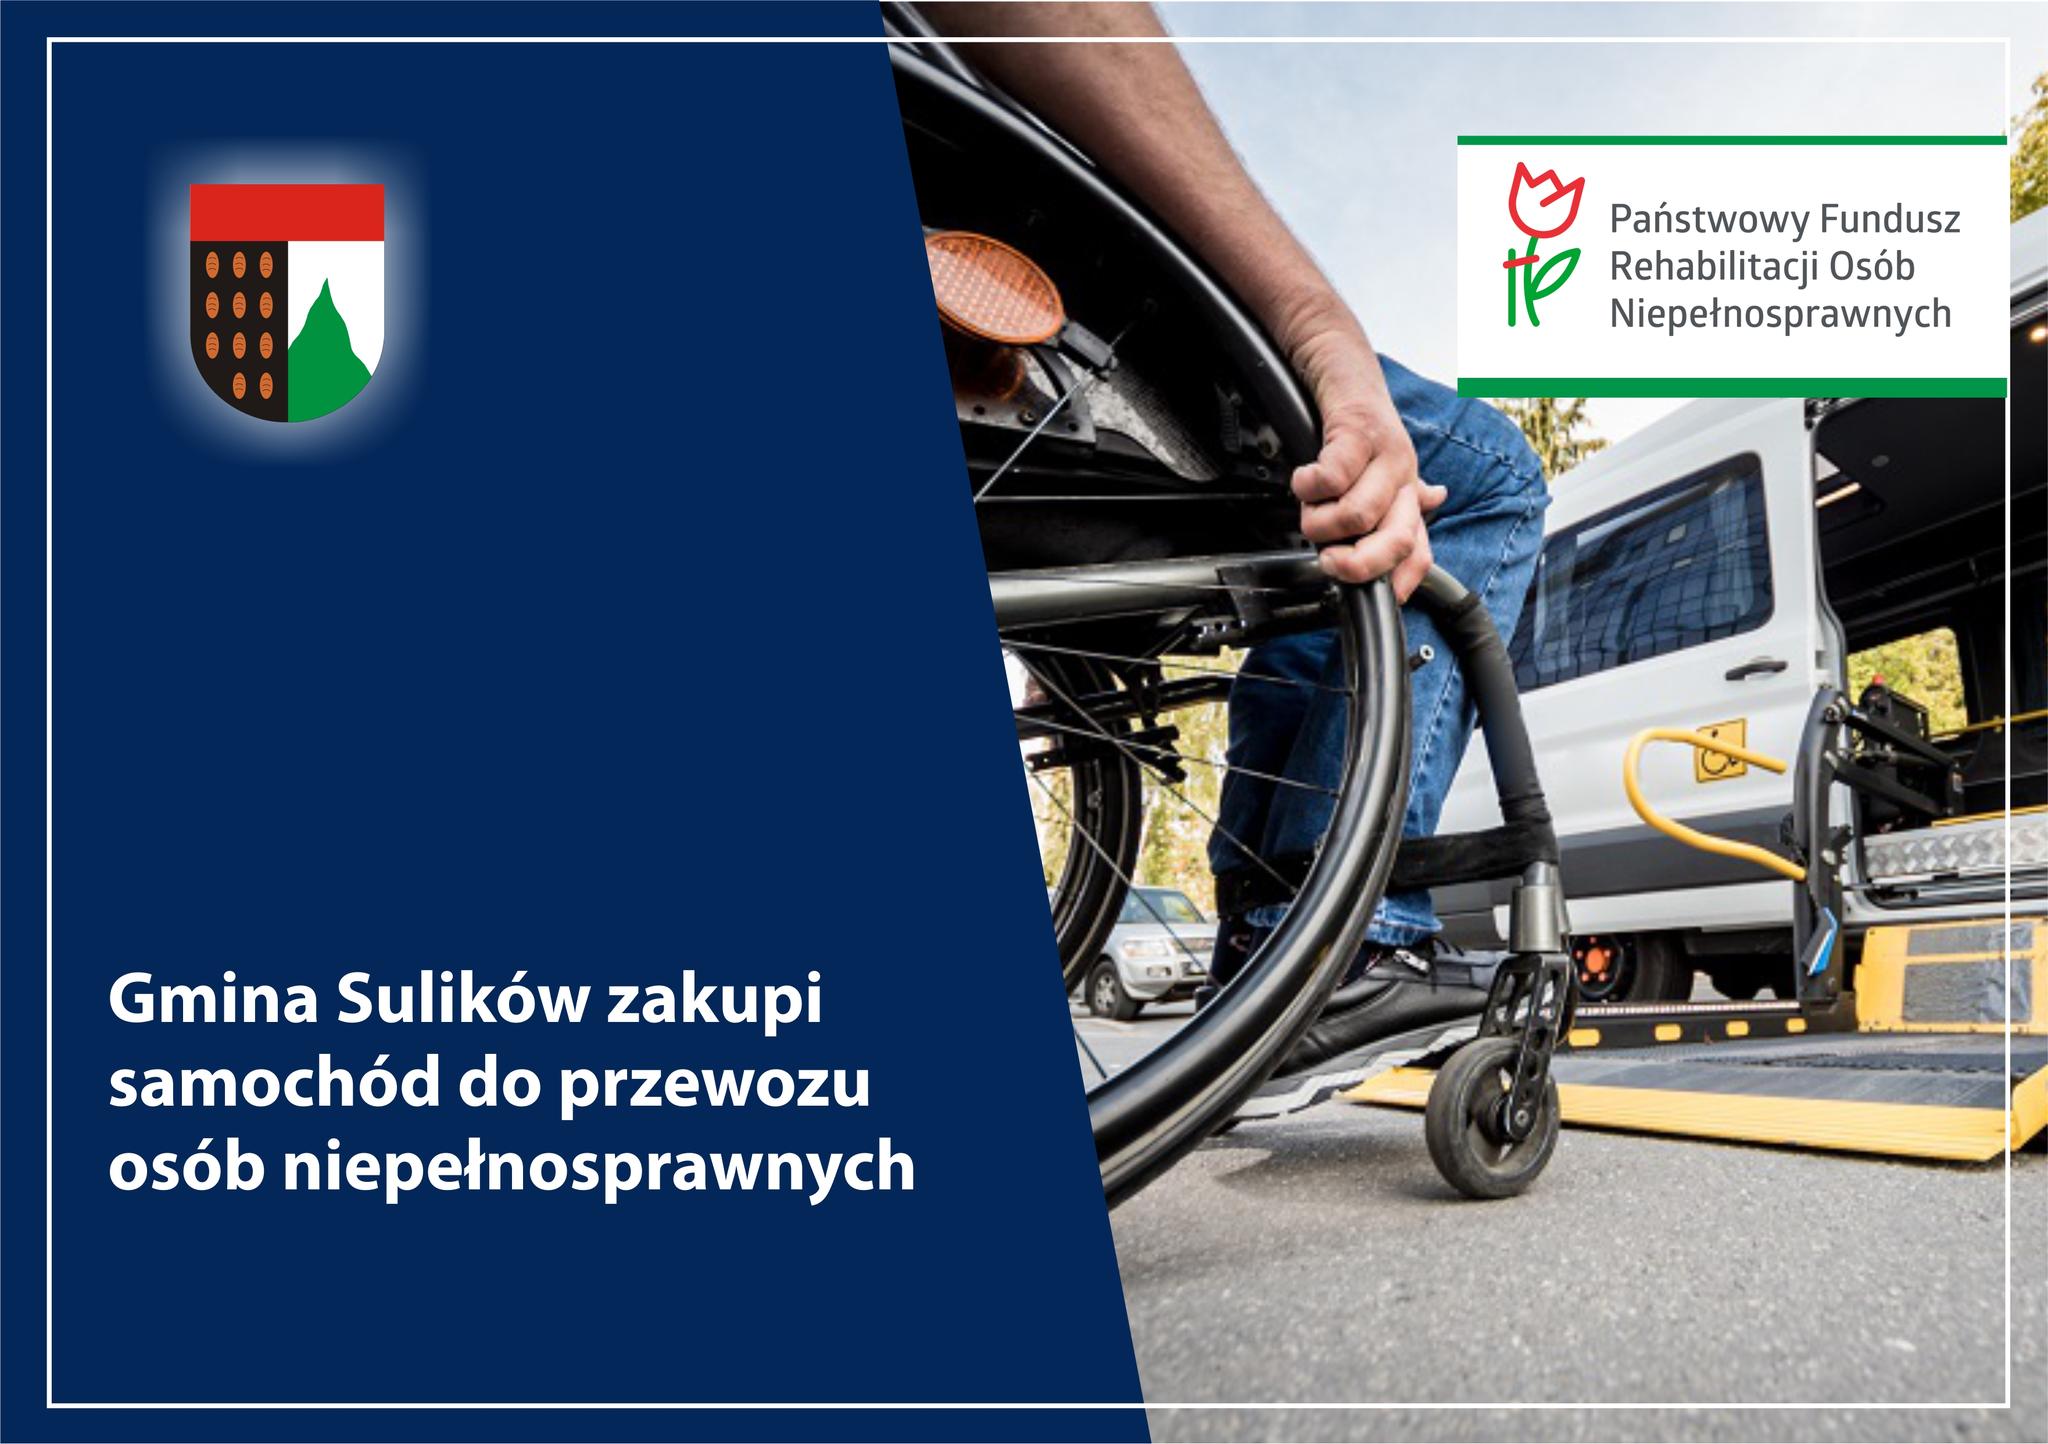 You are currently viewing SULIKÓW – Gmina zakupi samochód do przewozu osób niepełnosprawnych